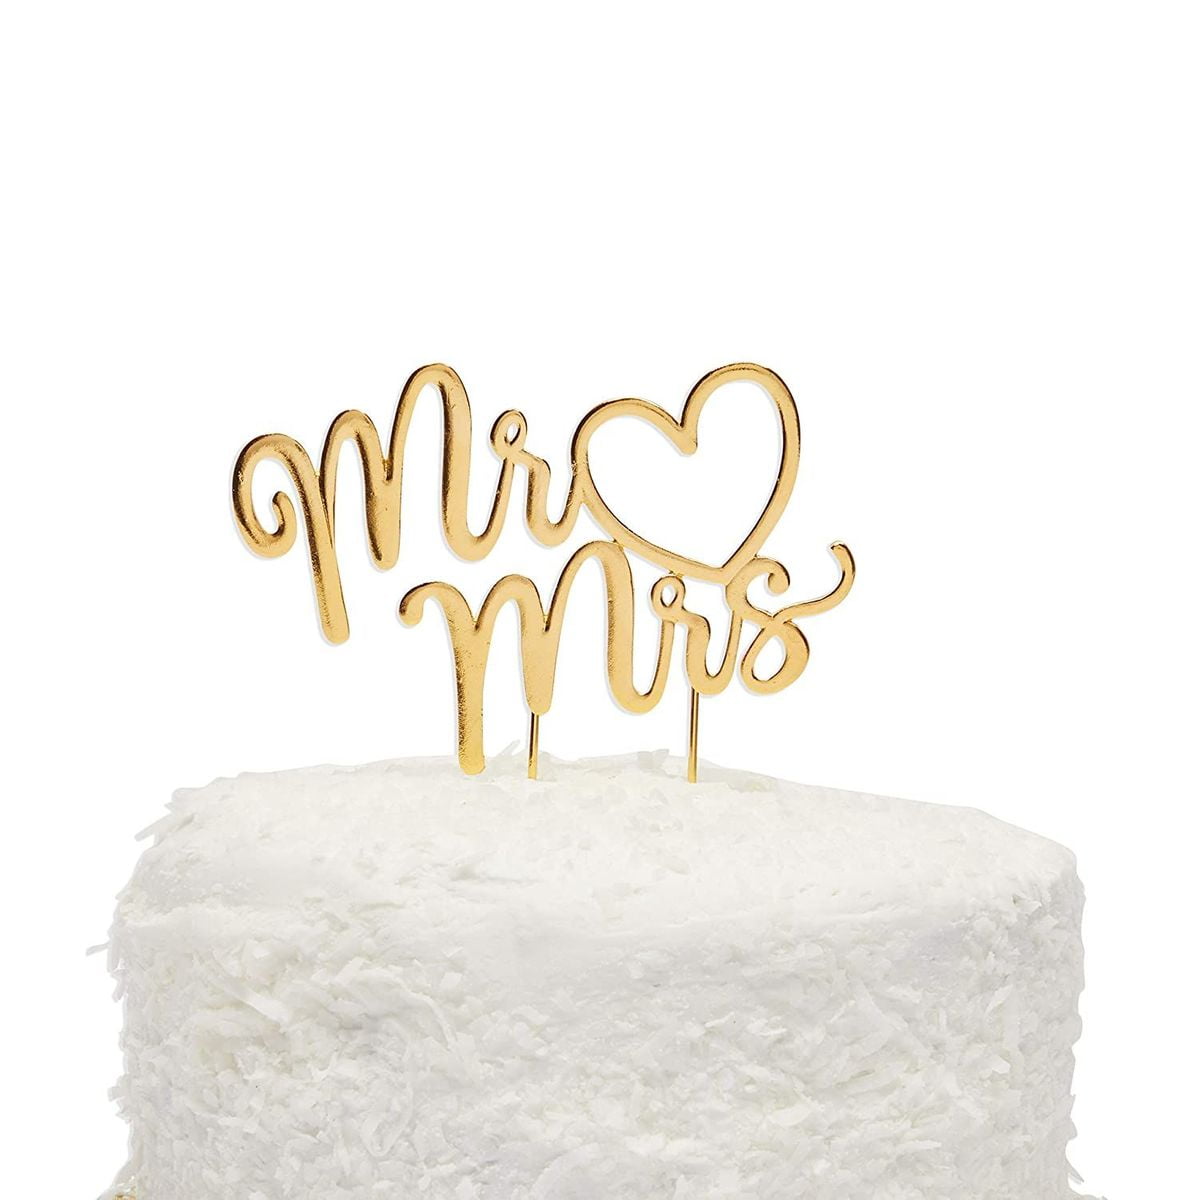 metallic-gold-mr-mrs-letter-wedding-cake-topper-with-tassel-for-anniversary-bridal-shower